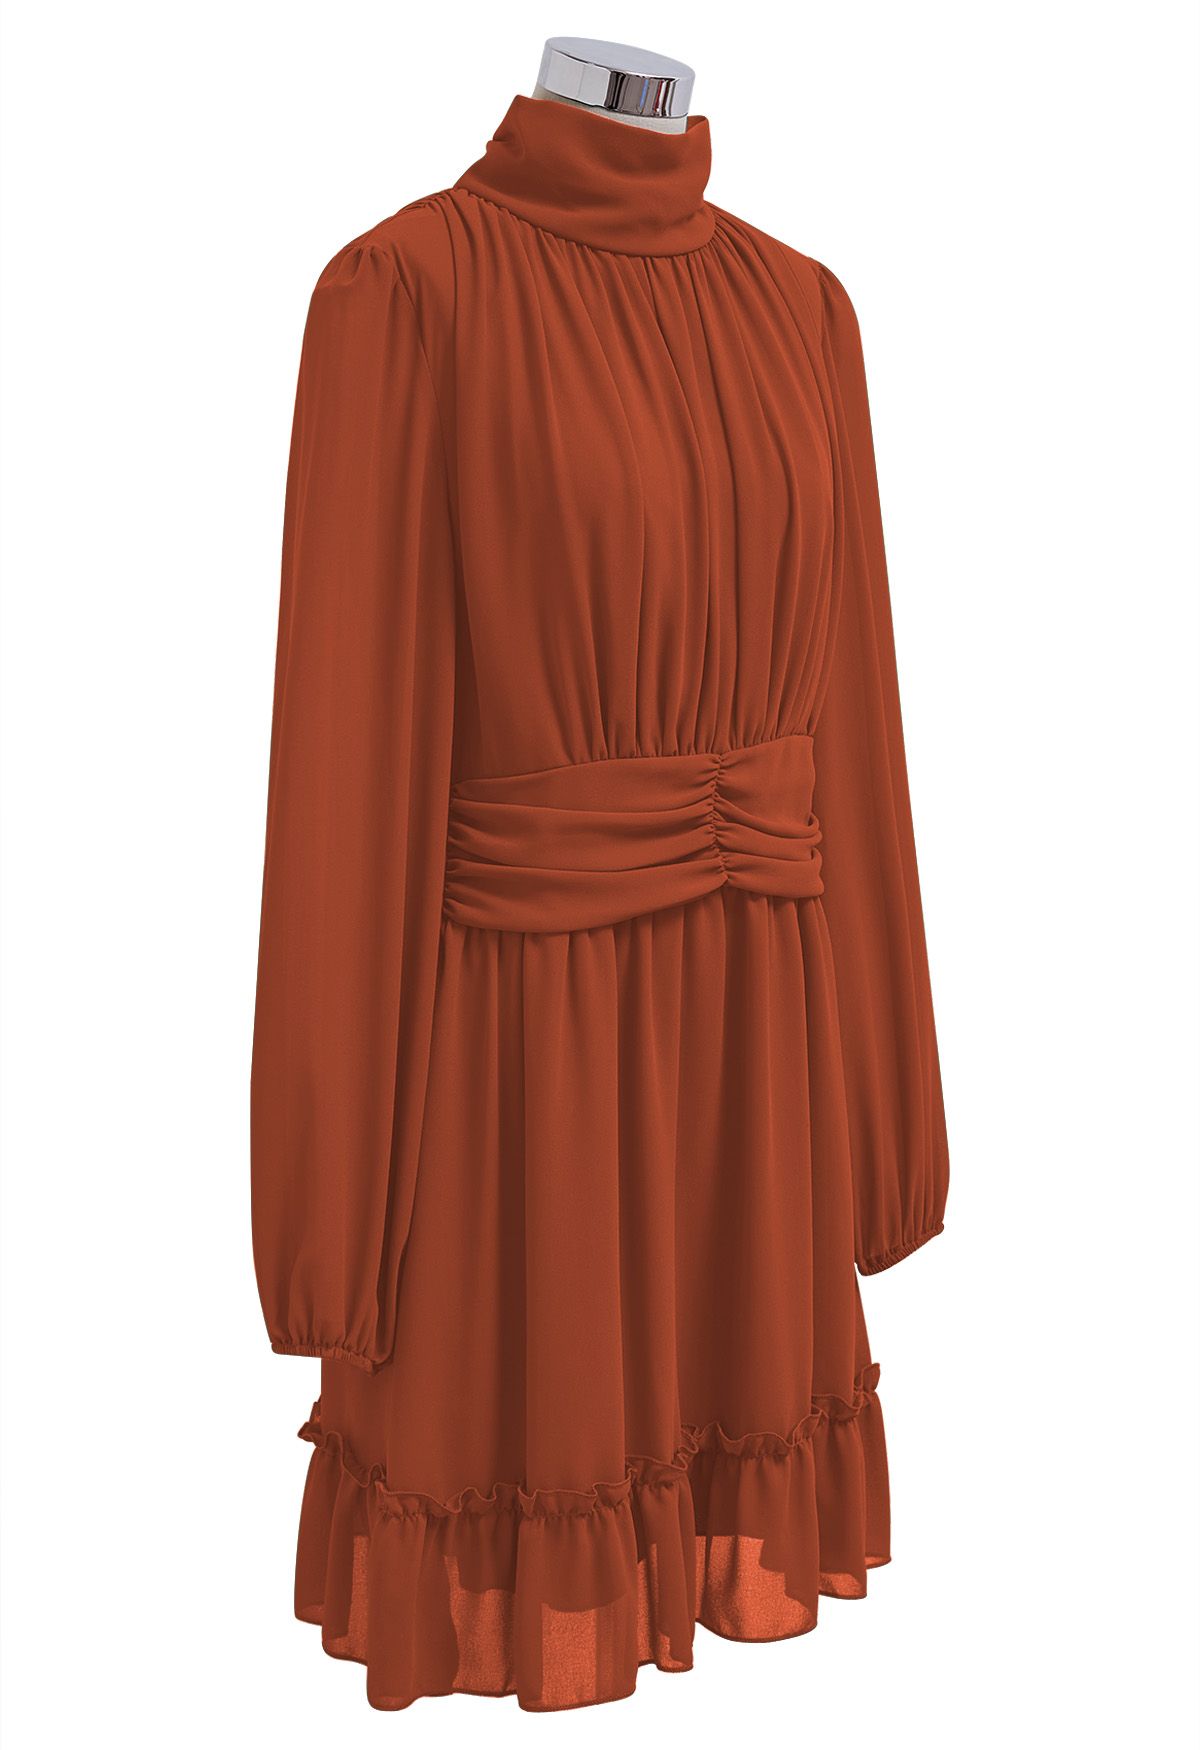 فستان من الشيفون ذو رقبة وهمية وخصر مزموم باللون البرتقالي